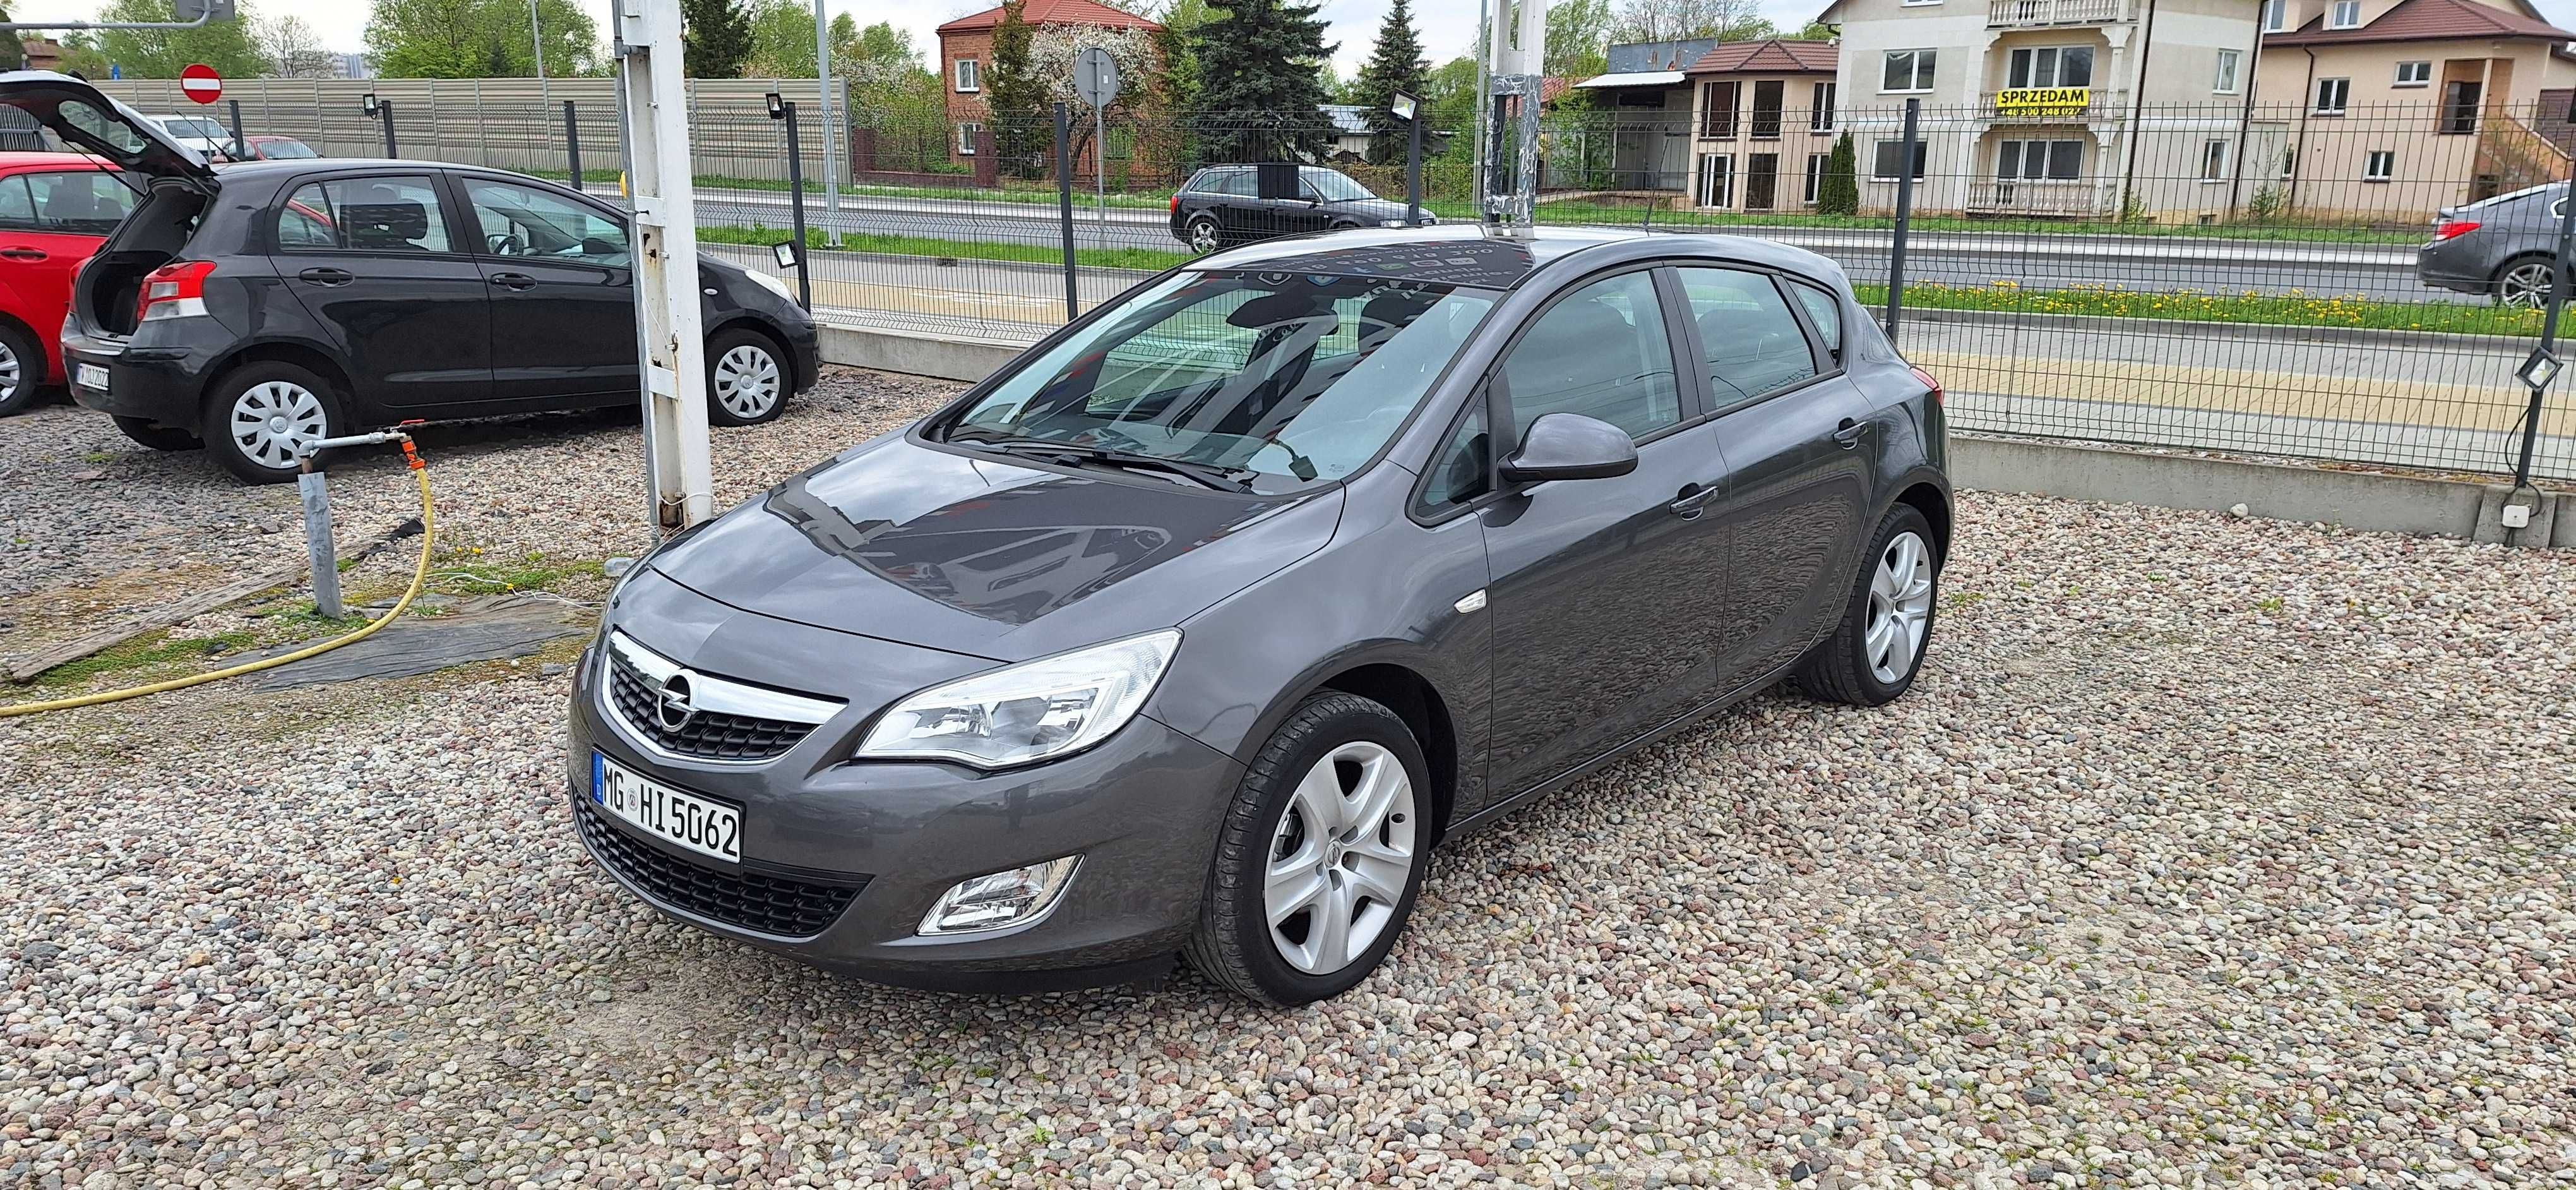 Opel Astra 2010r. 1.6 Benzyna Ecotec 116KM Serwis Zadbana